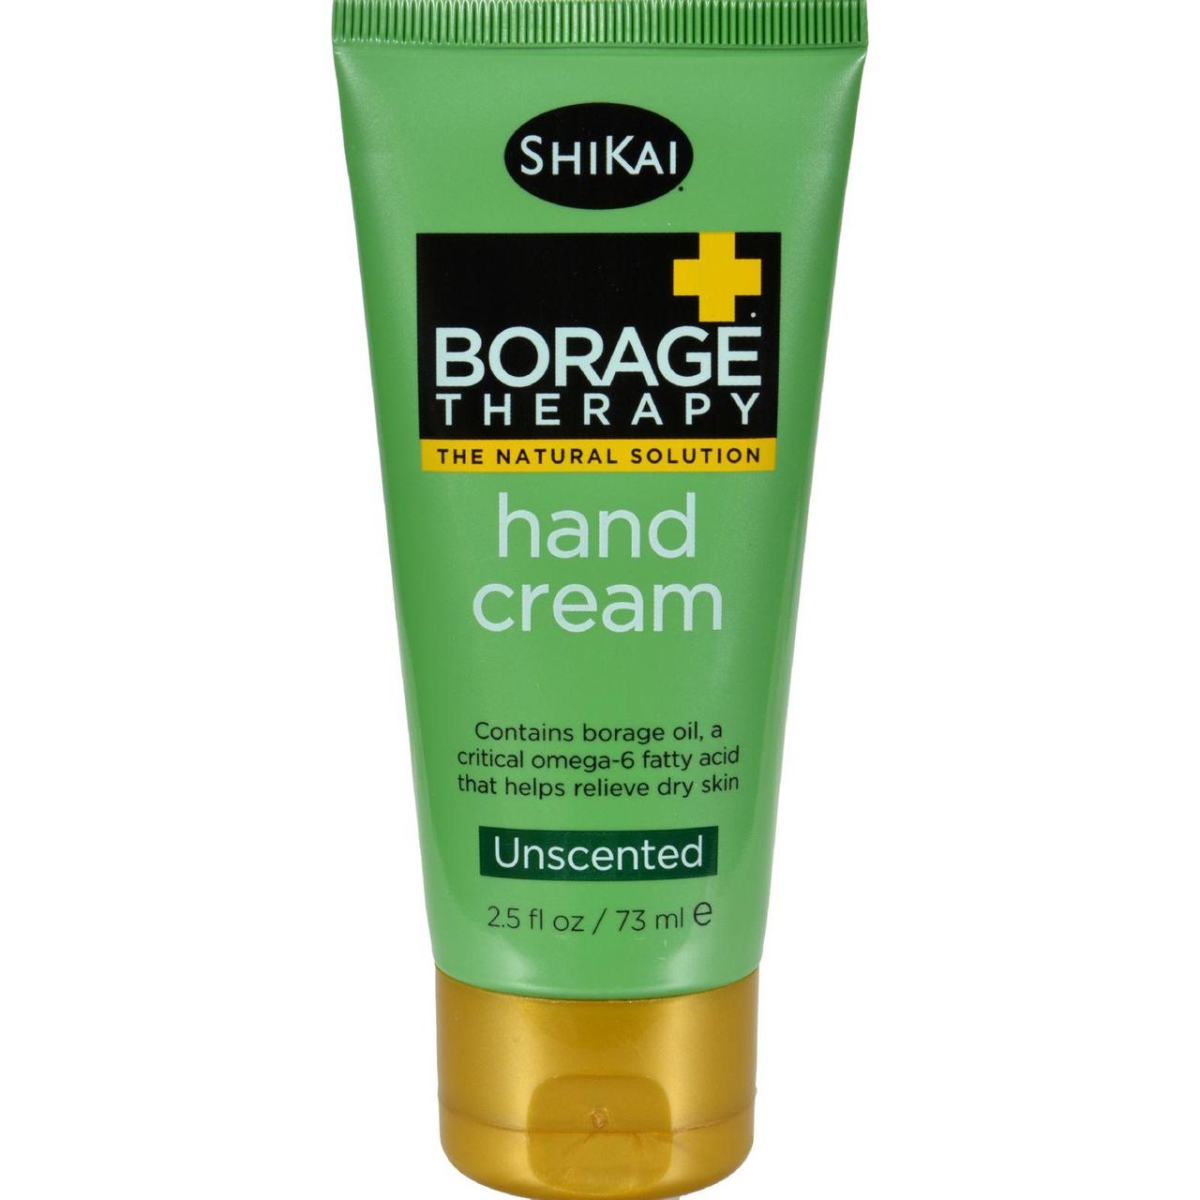 Hg0262972 2.5 Fl Oz Borage Therapy Hand Cream - Unscented